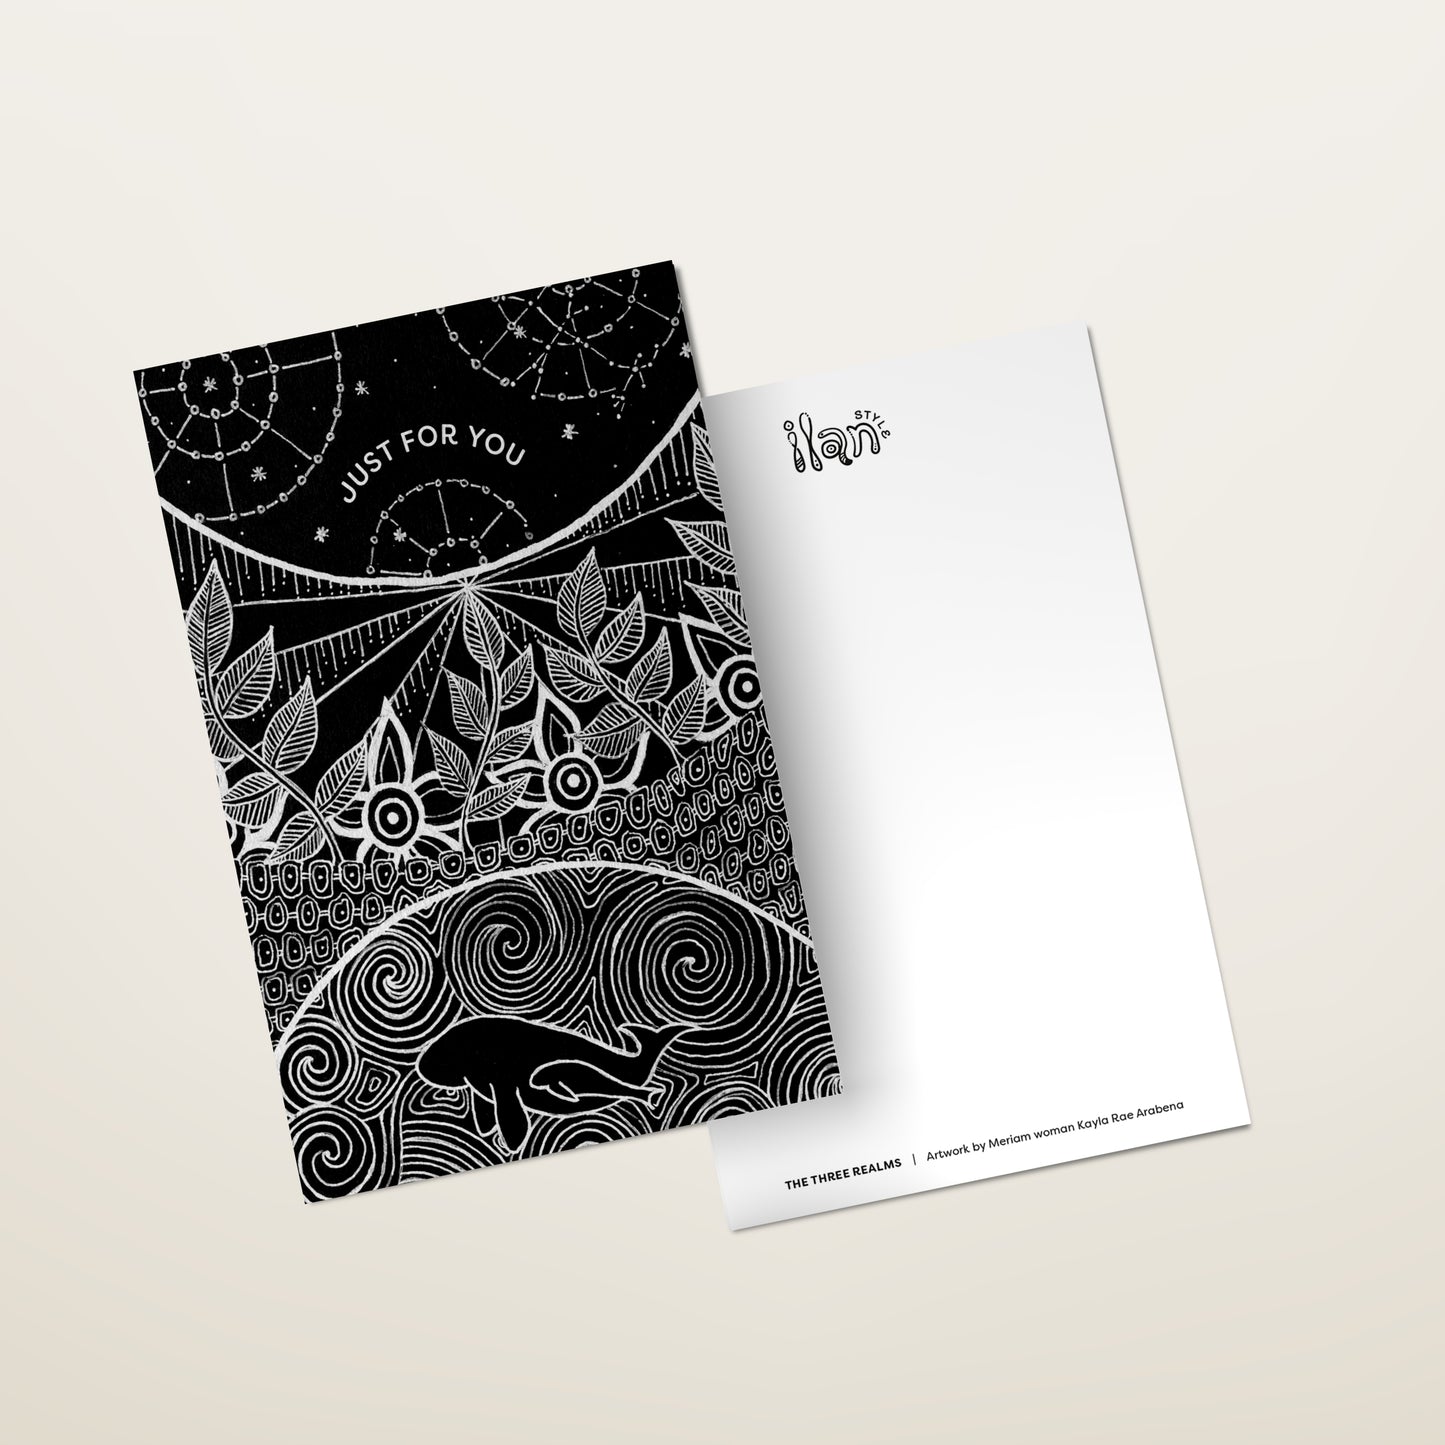 Ilan Style Art Series Greeting Cards Bundle